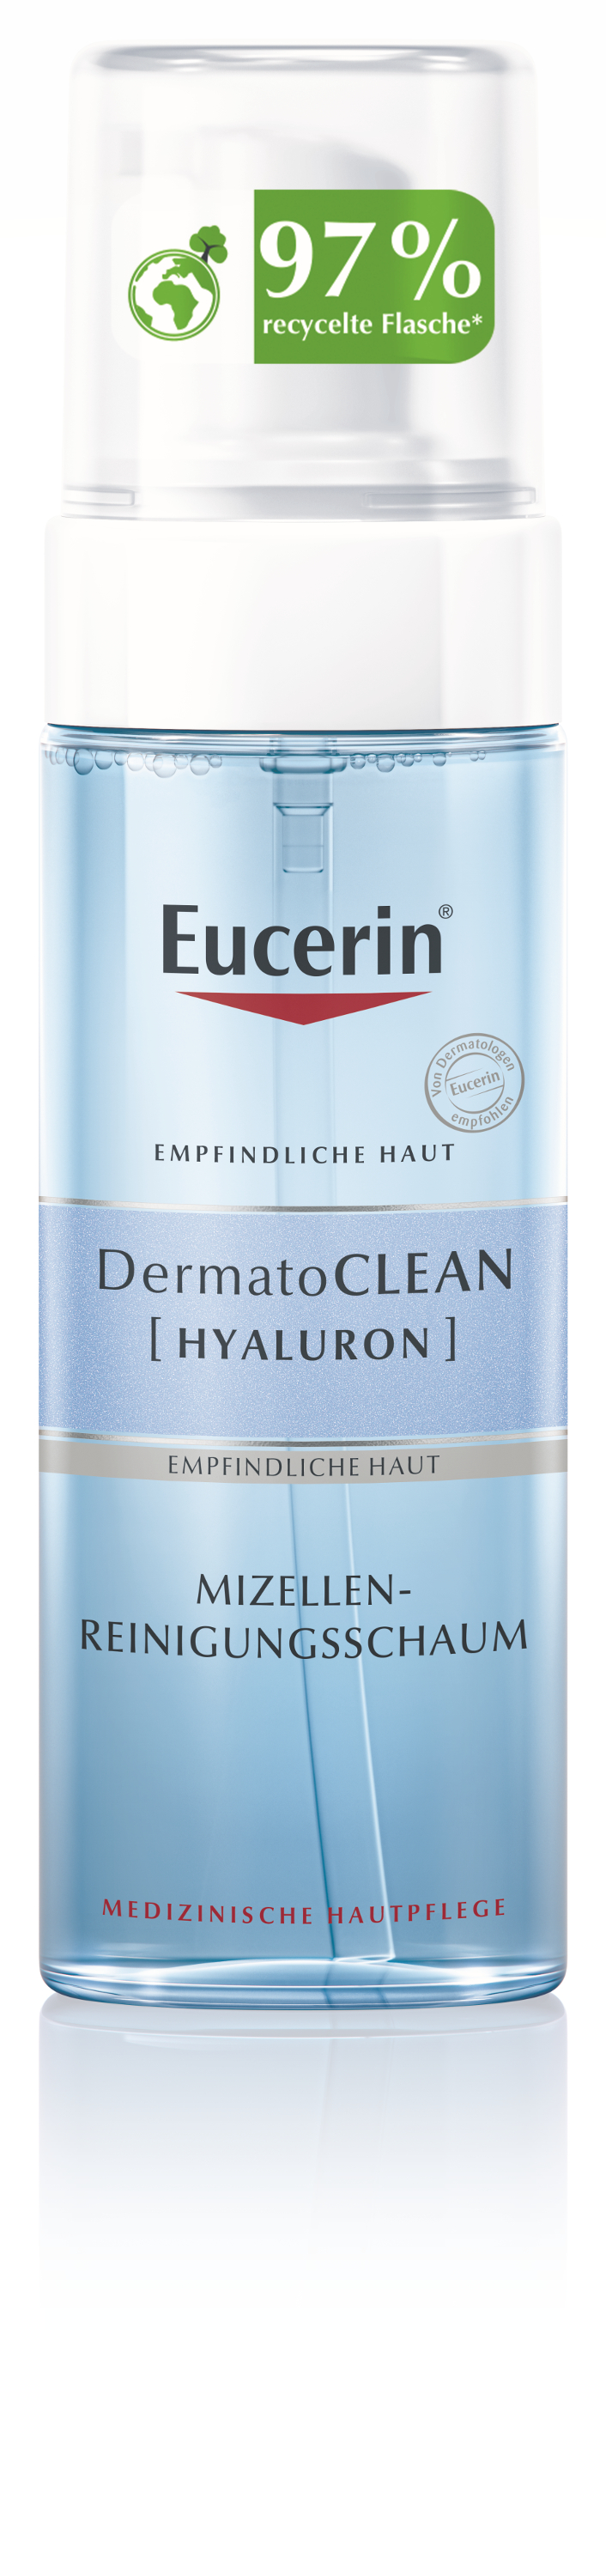 Eucerin DermatoCLEAN Hyaluron Mizellen-Reinigungsschaum (150 ml)